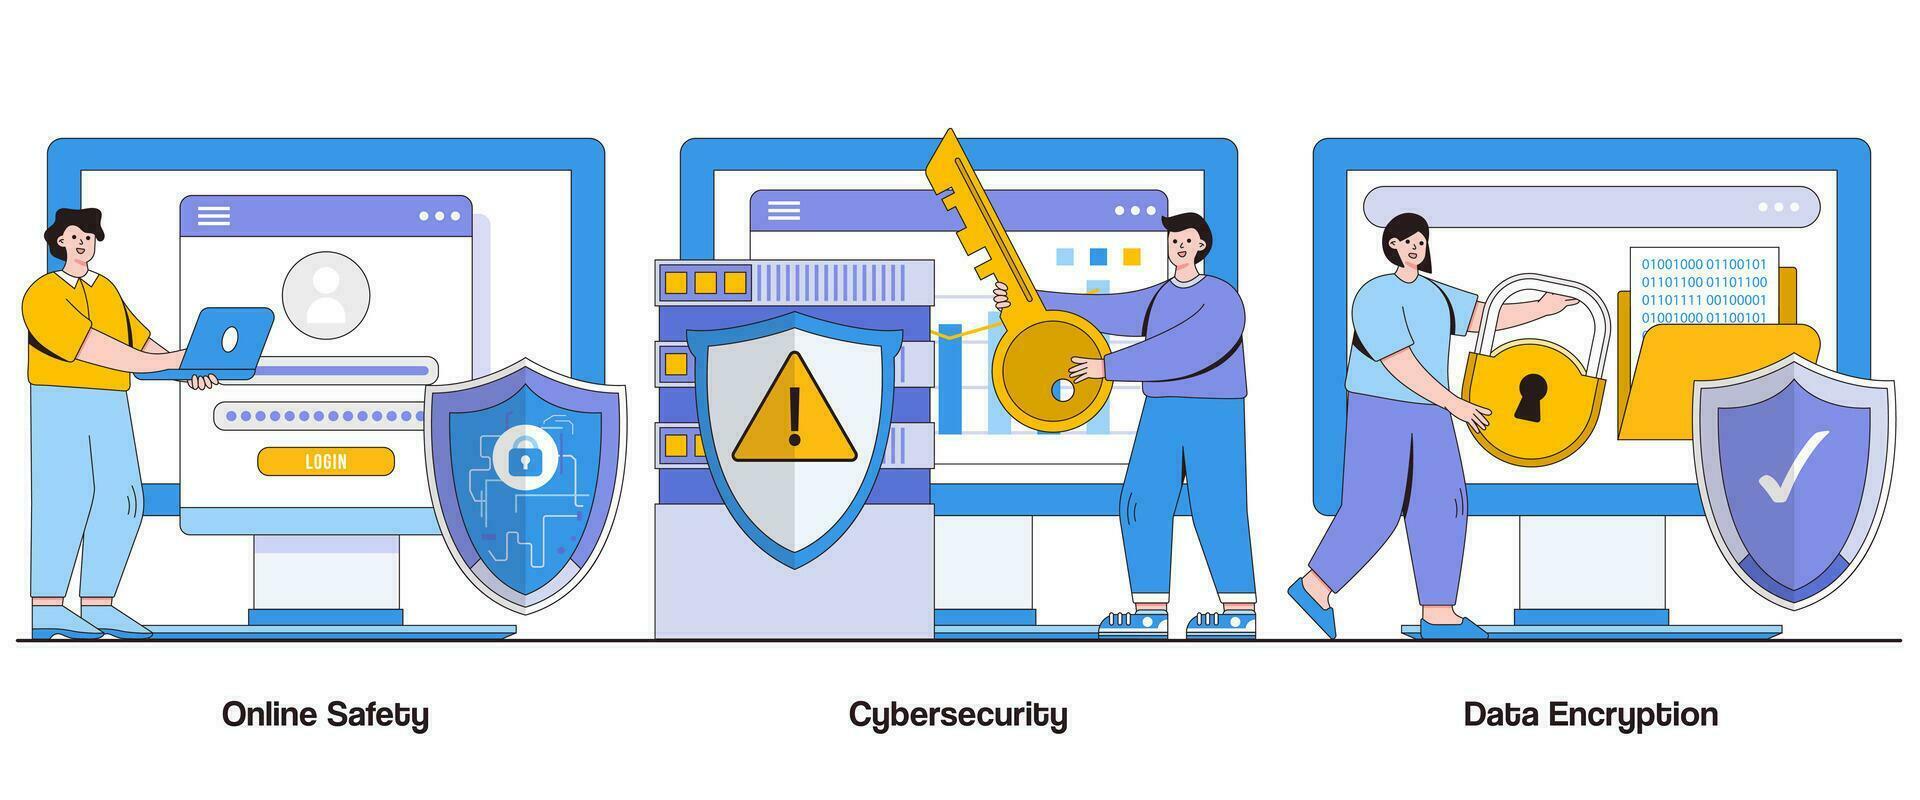 uppkopplad säkerhet, Cybersäkerhet, och data kryptering begrepp med karaktär. digital säkerhet abstrakt vektor illustration uppsättning. Integritet, skydd, och hot förebyggande liknelse